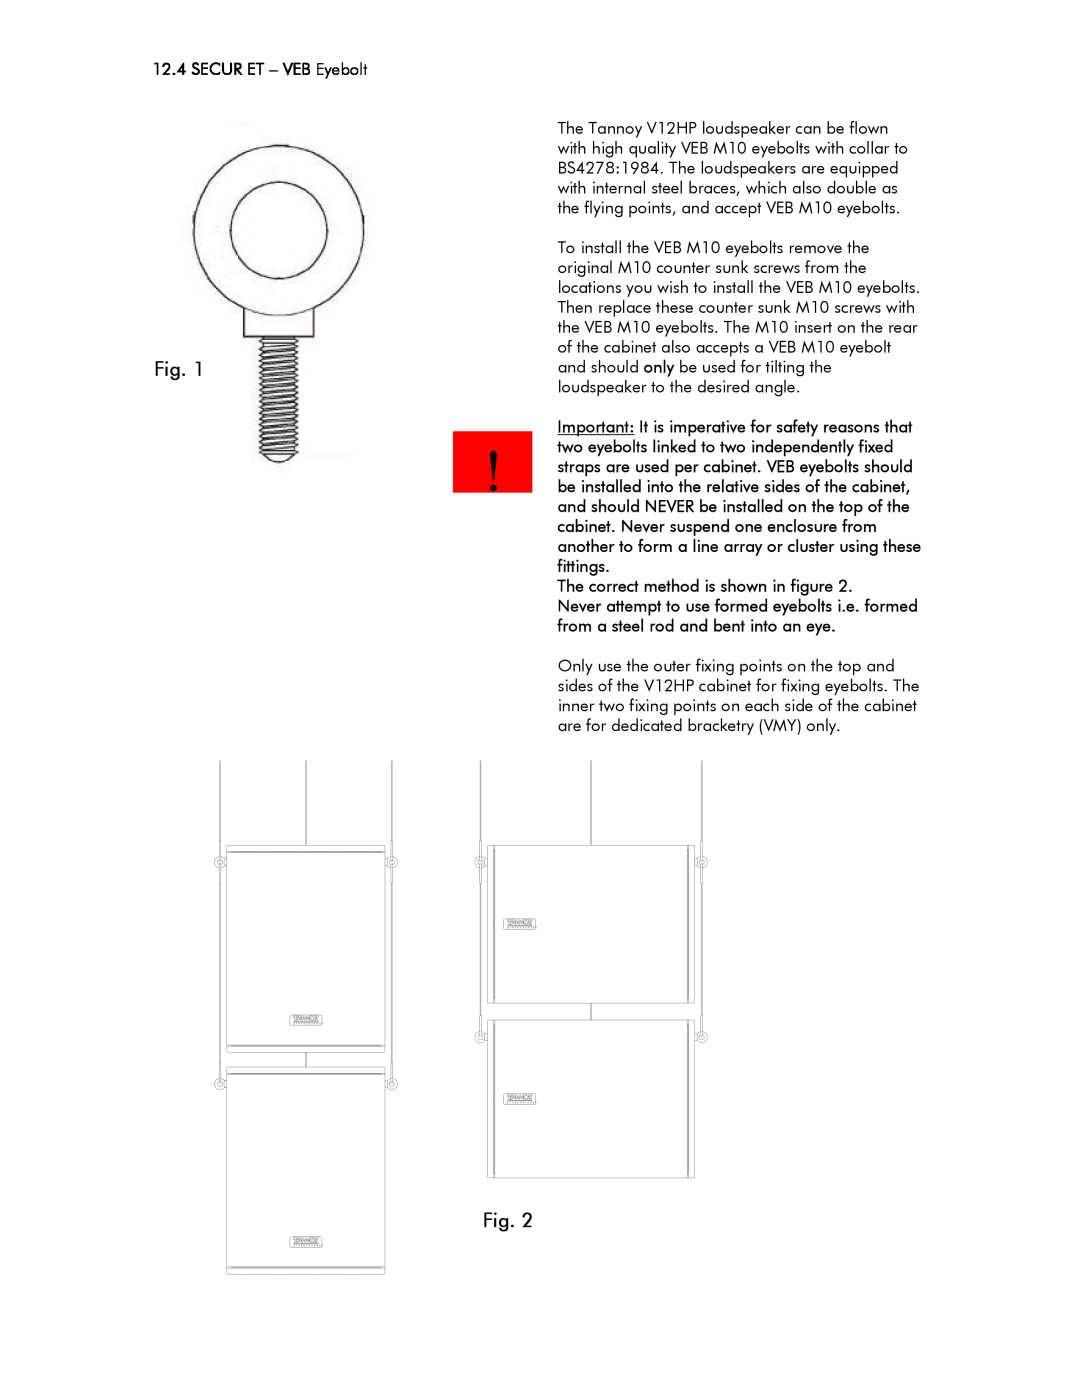 Tannoy V12HP user manual Fig, SECUR ET – VEB Eyebolt, The correct method is shown in figure 